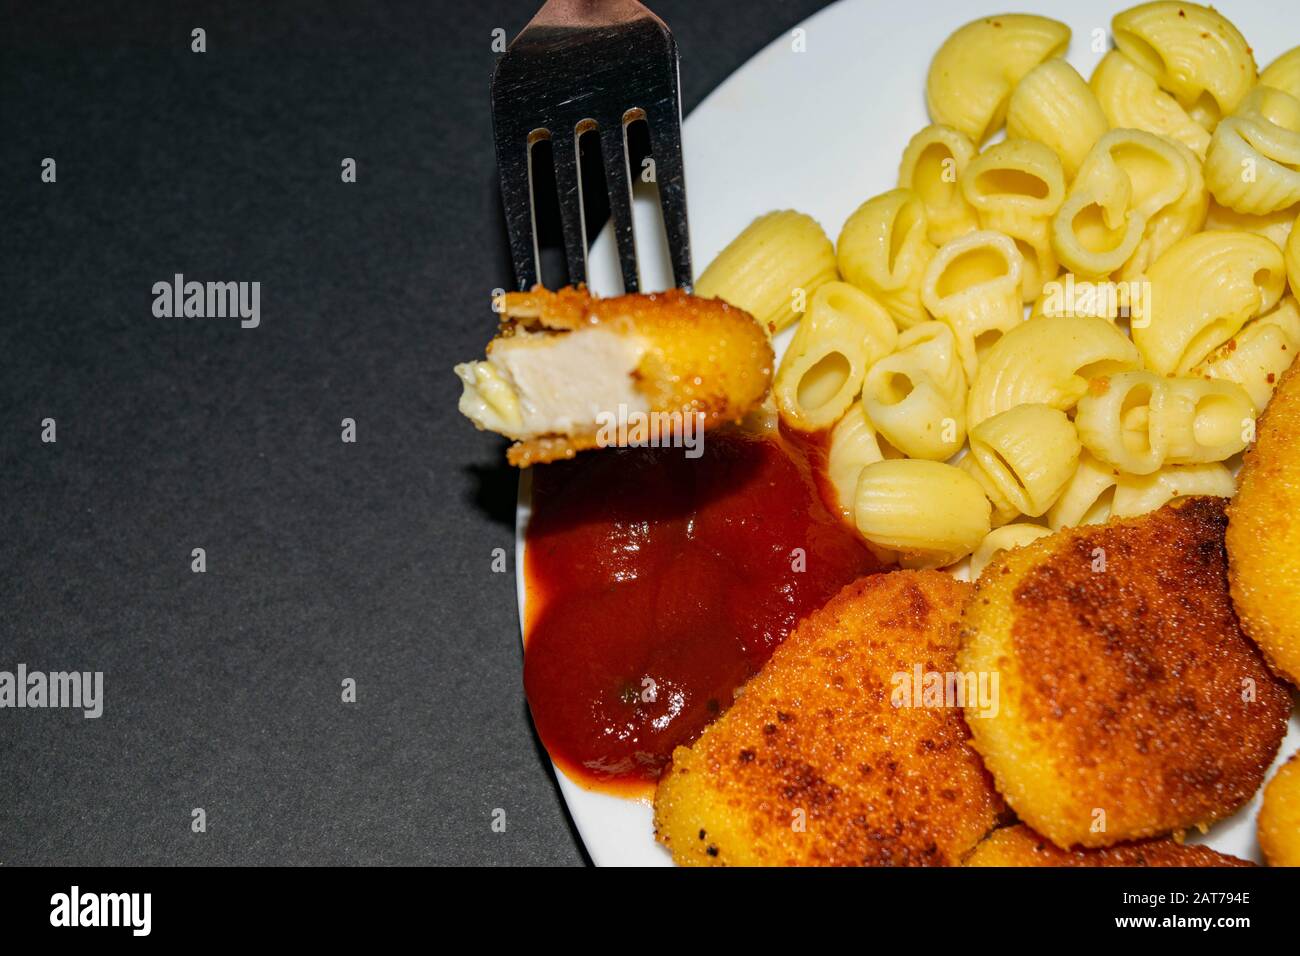 Un morceau de pépites sur une fourchette et une plaque blanche avec des pépites de poulet frit, des pâtes et du ketchup sur un fond sombre. Gros plan Banque D'Images